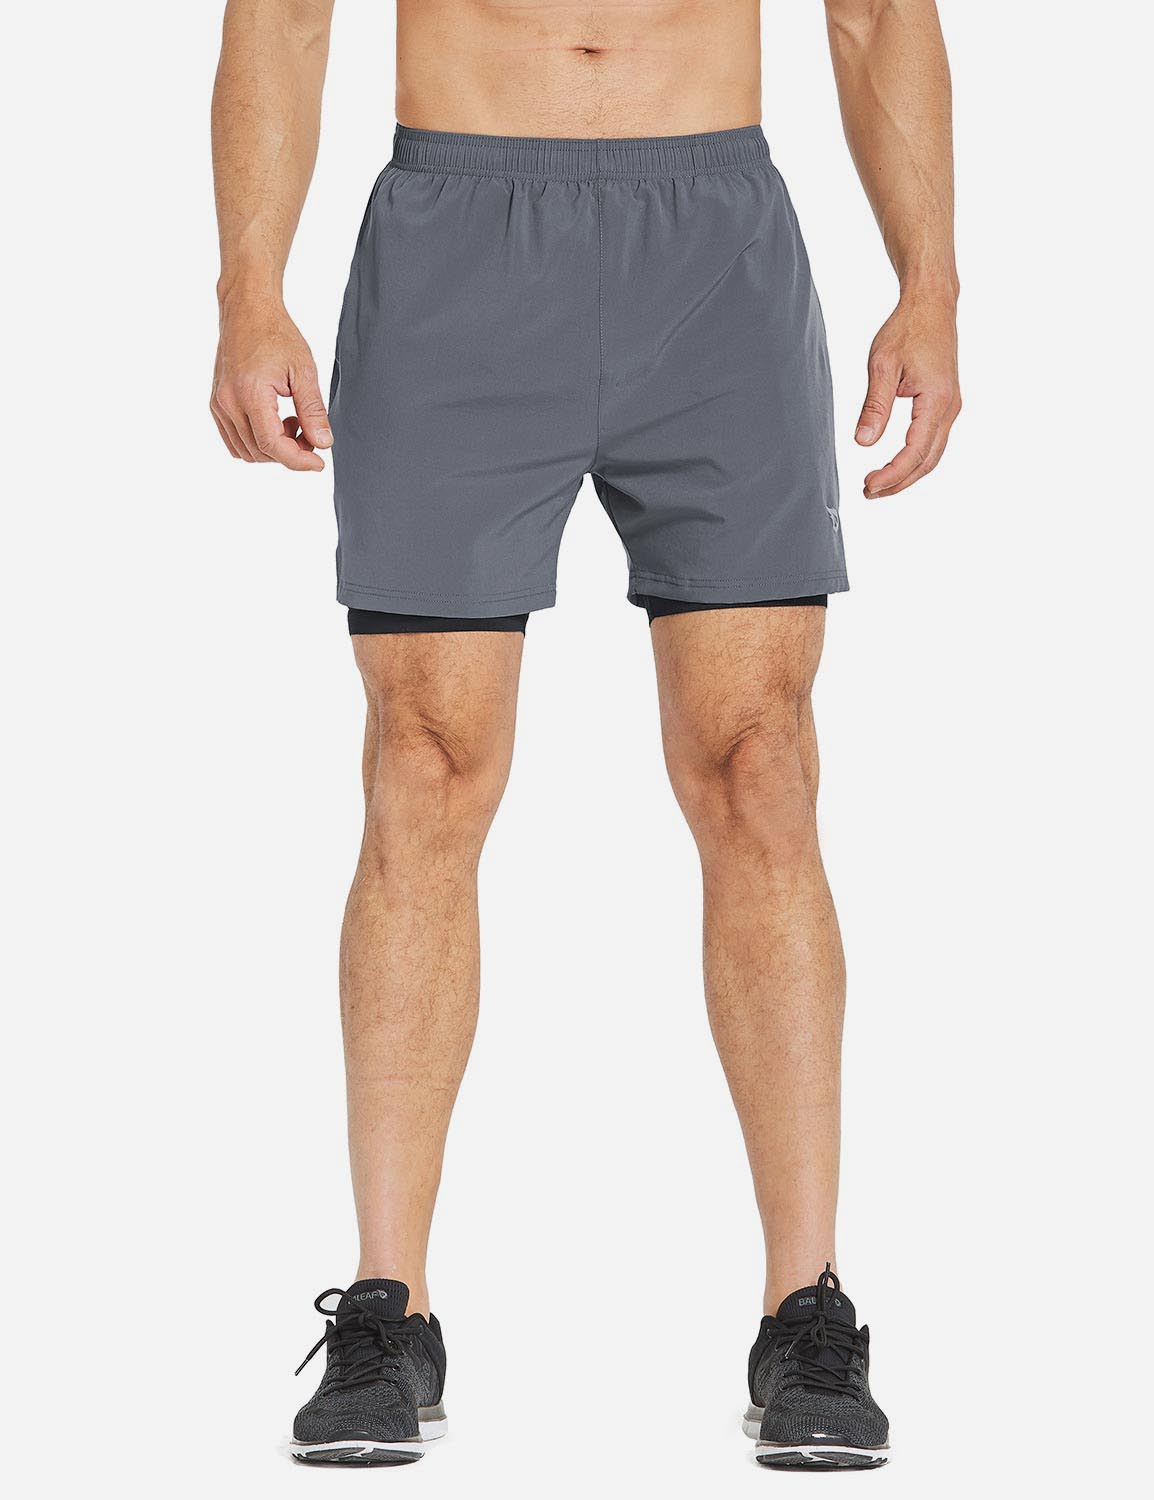 Baleaf Men's 2-in-1 Split Leg Back Pocketed Compression Gym Shorts abd277 Gray/Black Main